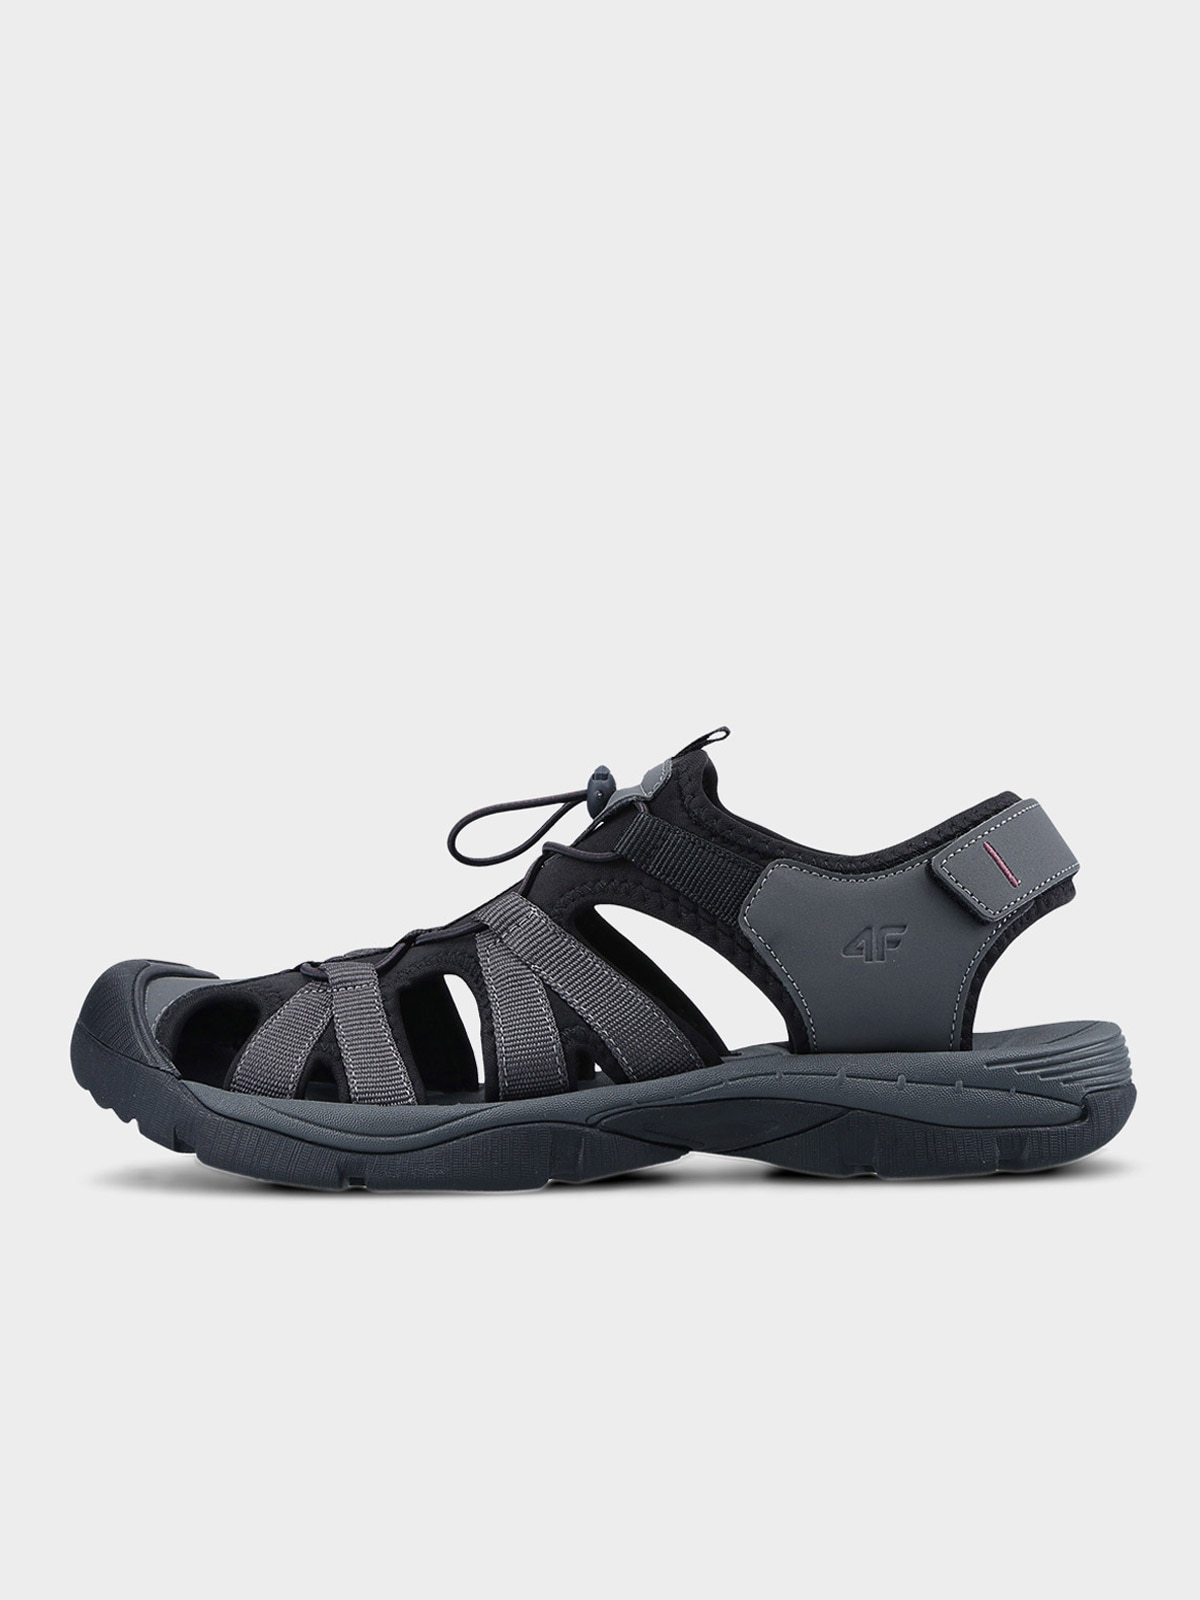 Pánské sandály s krytou špičkou - šedé